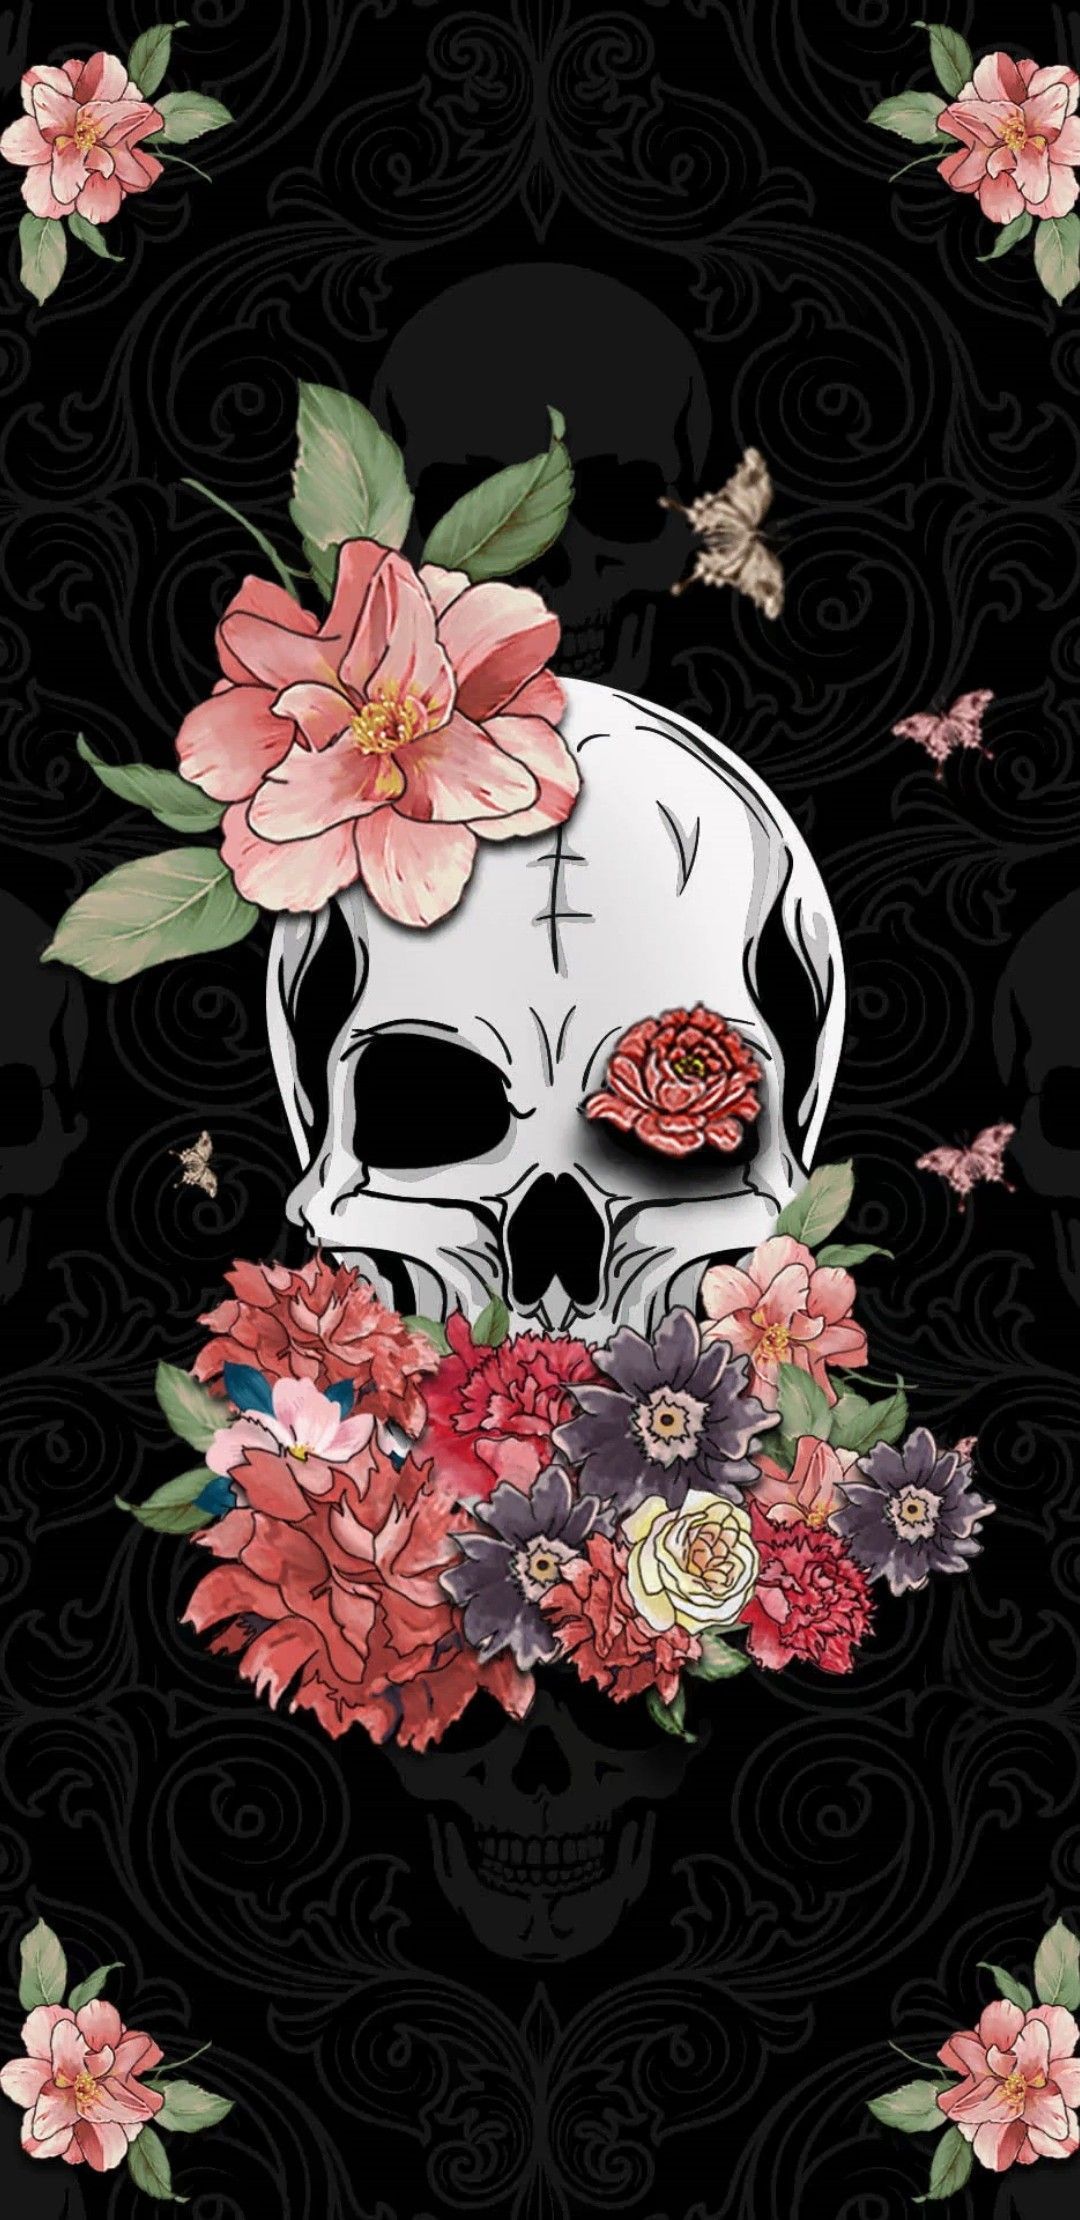 Floral Skull Wallpaper Free Floral Skull Background